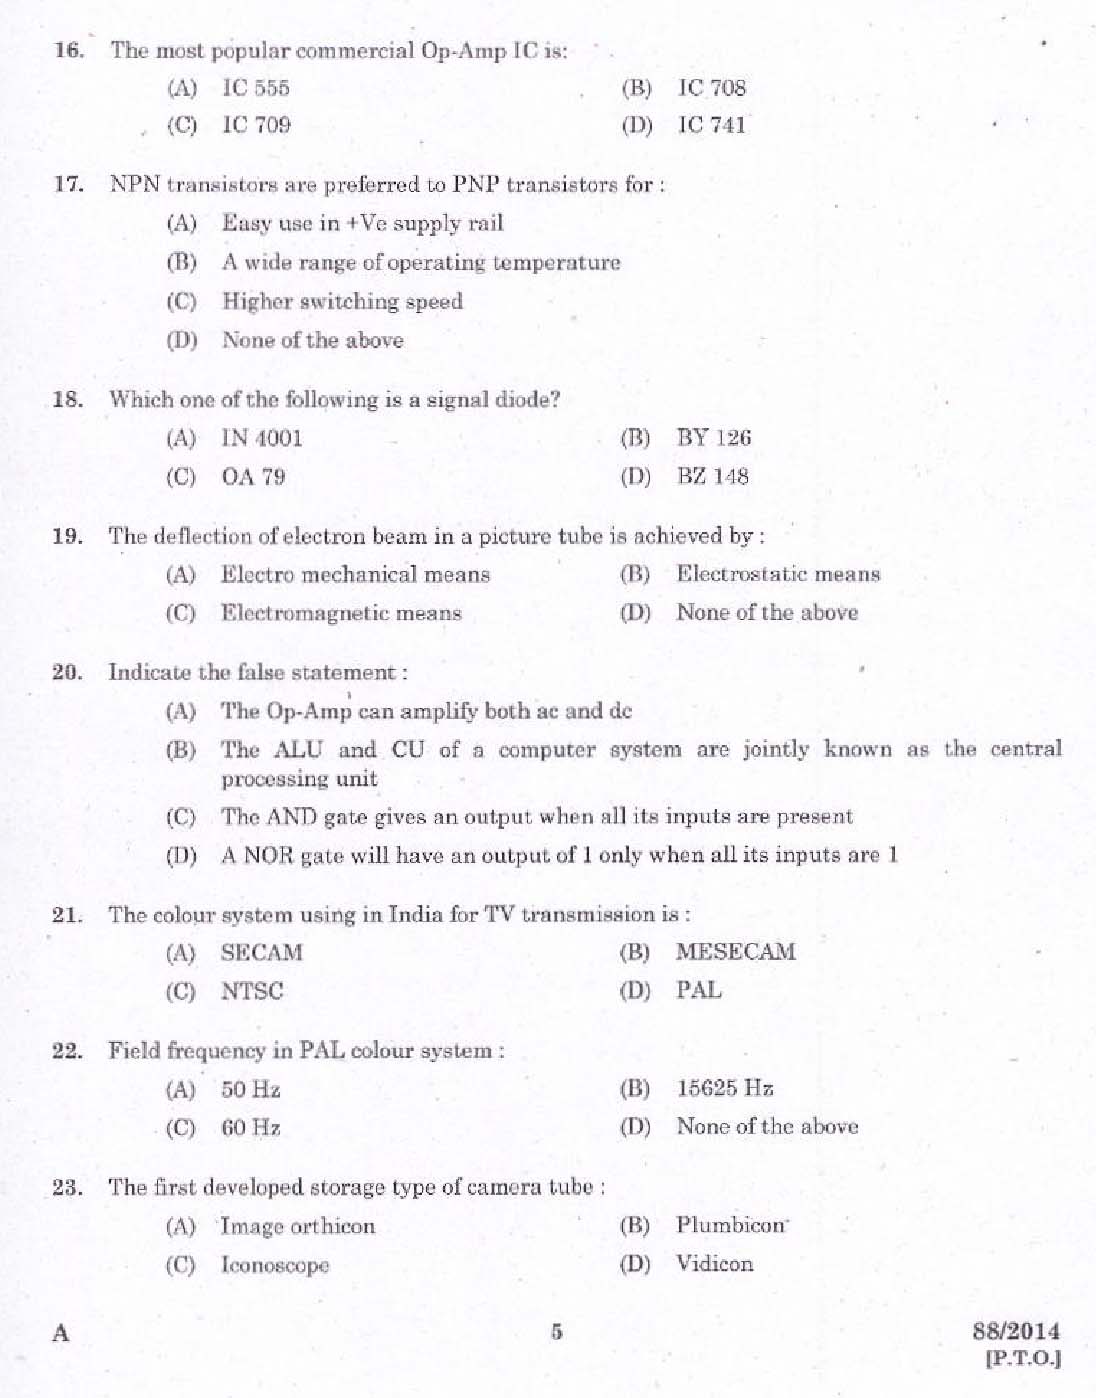 Kerala PSC Junior Instructor Exam Question Paper Code 882014 3